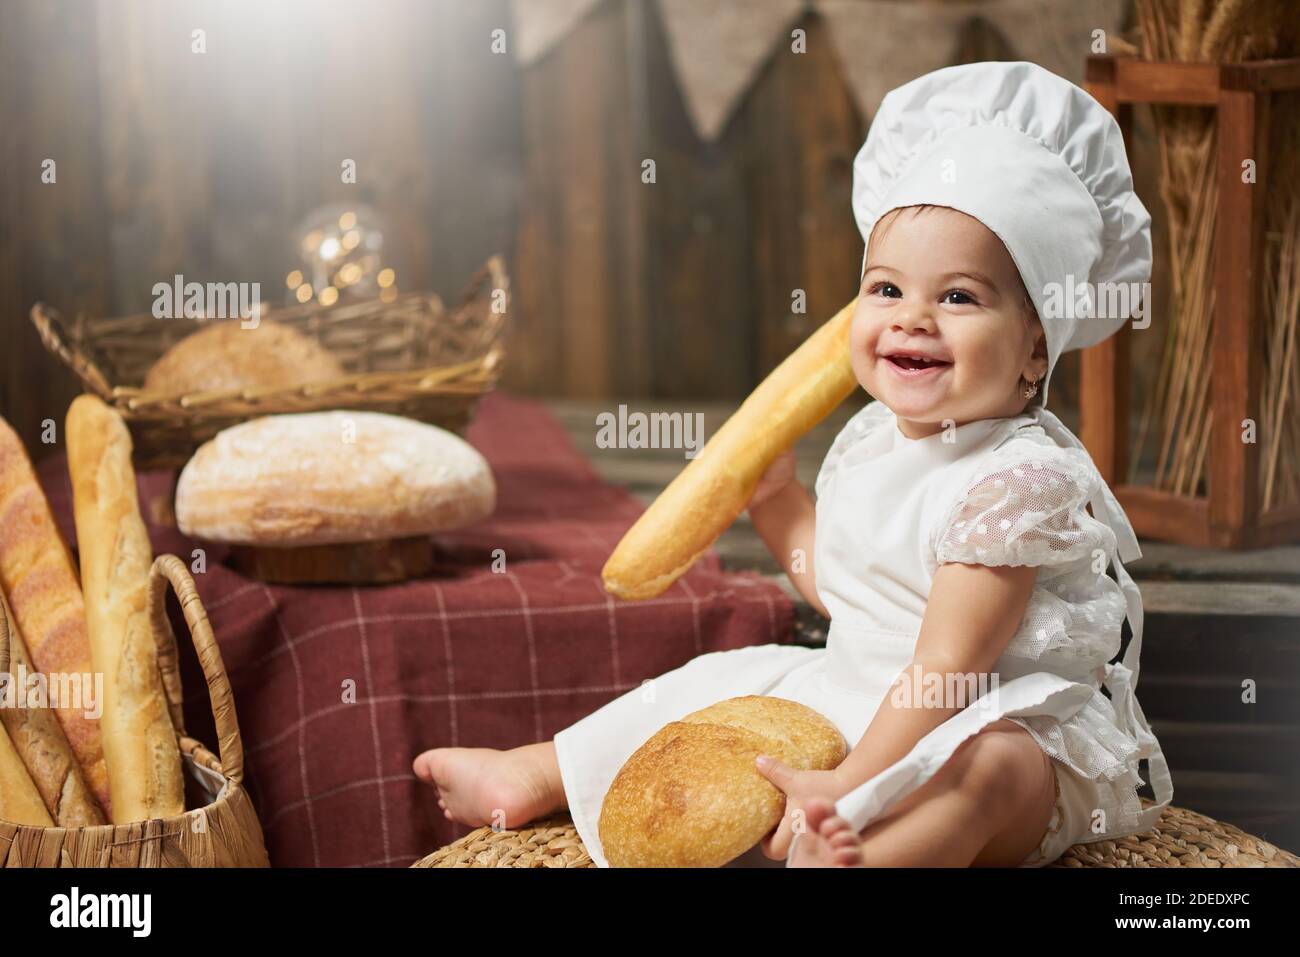 Feliz panadero de bebé sosteniendo pan y sonriendo Foto de stock